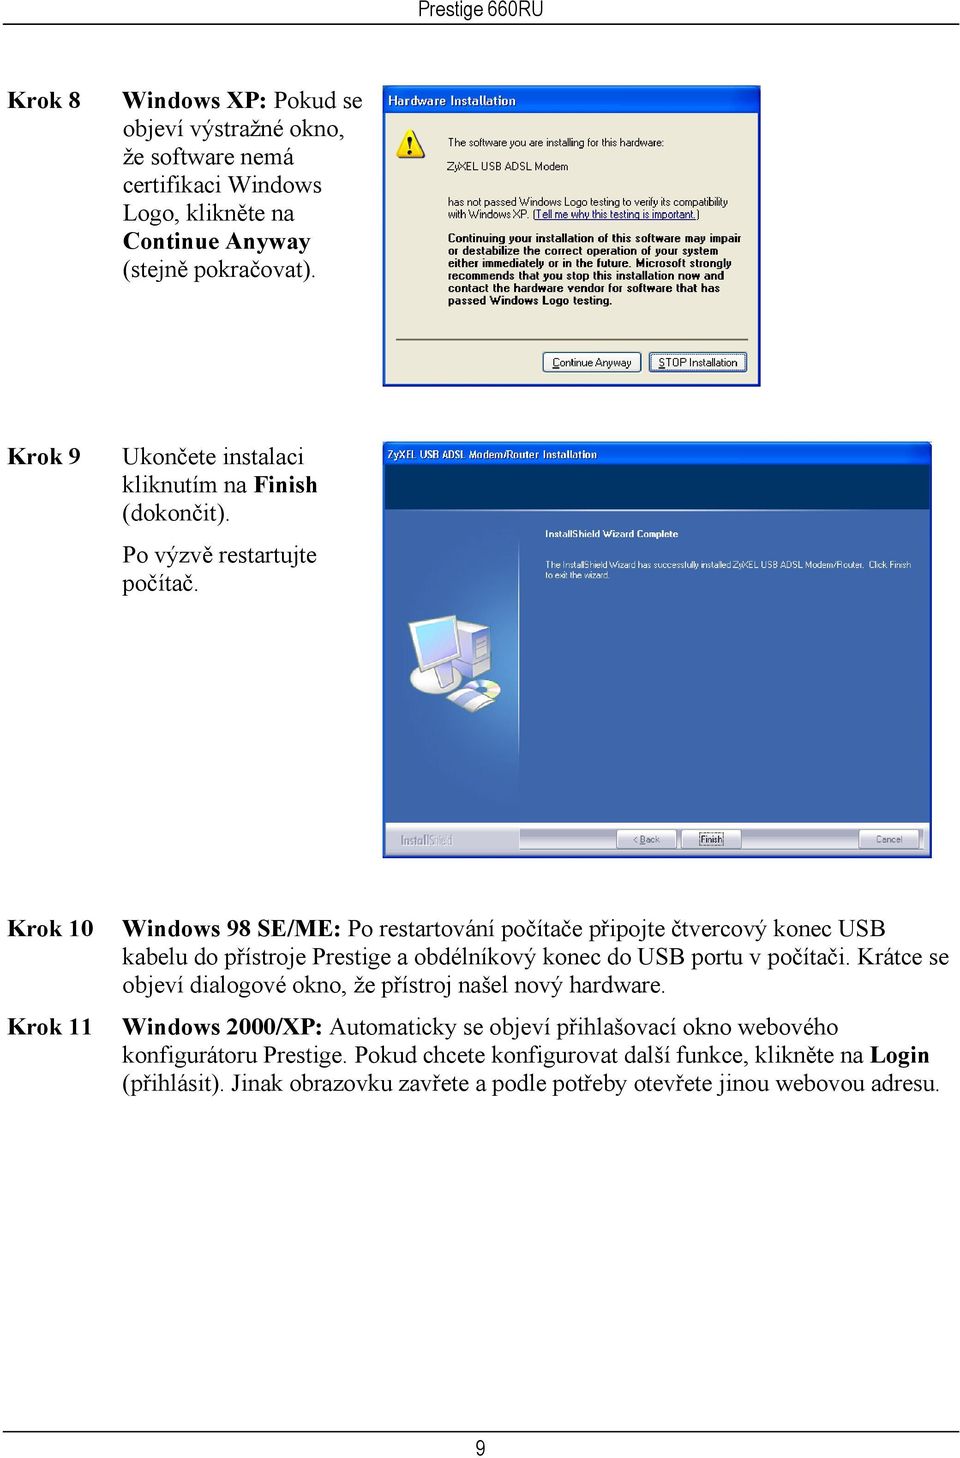 Krok 10 Krok 11 Windows 98 SE/ME: Po restartování počítače připojte čtvercový konec USB kabelu do přístroje Prestige a obdélníkový konec do USB portu v počítači.